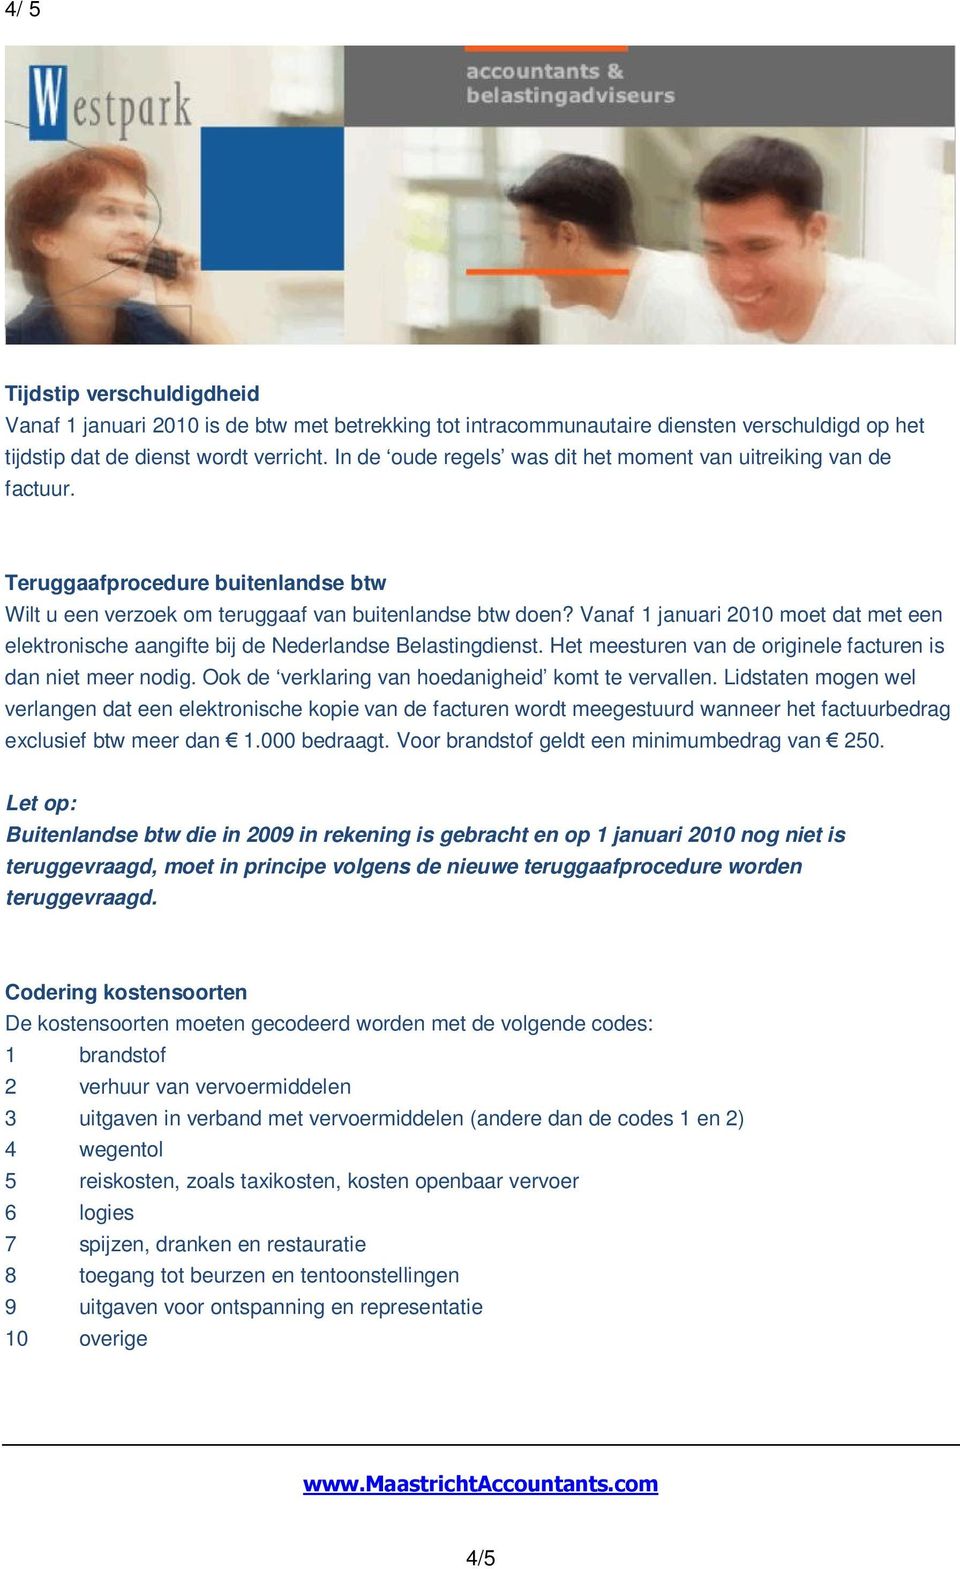 Vanaf 1 januari 2010 moet dat met een elektronische aangifte bij de Nederlandse Belastingdienst. Het meesturen van de originele facturen is dan niet meer nodig.